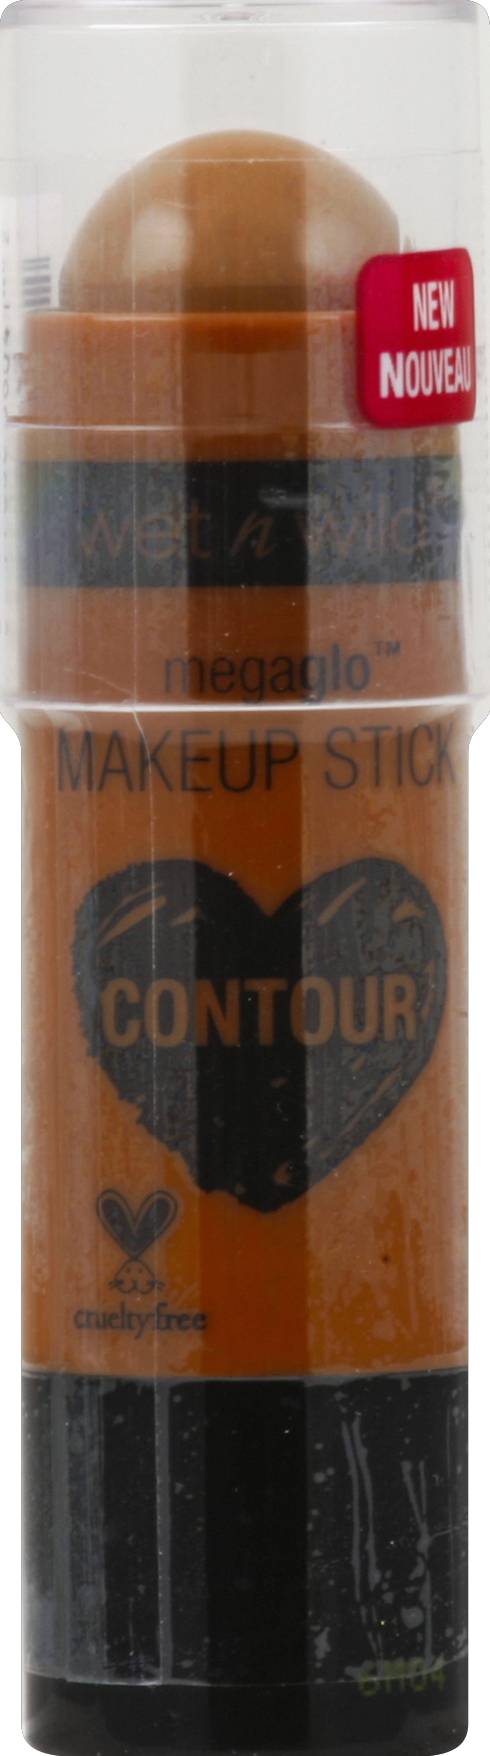 Wet N Wild Megaglo Contour Oak's on You 804a Makeup Stick